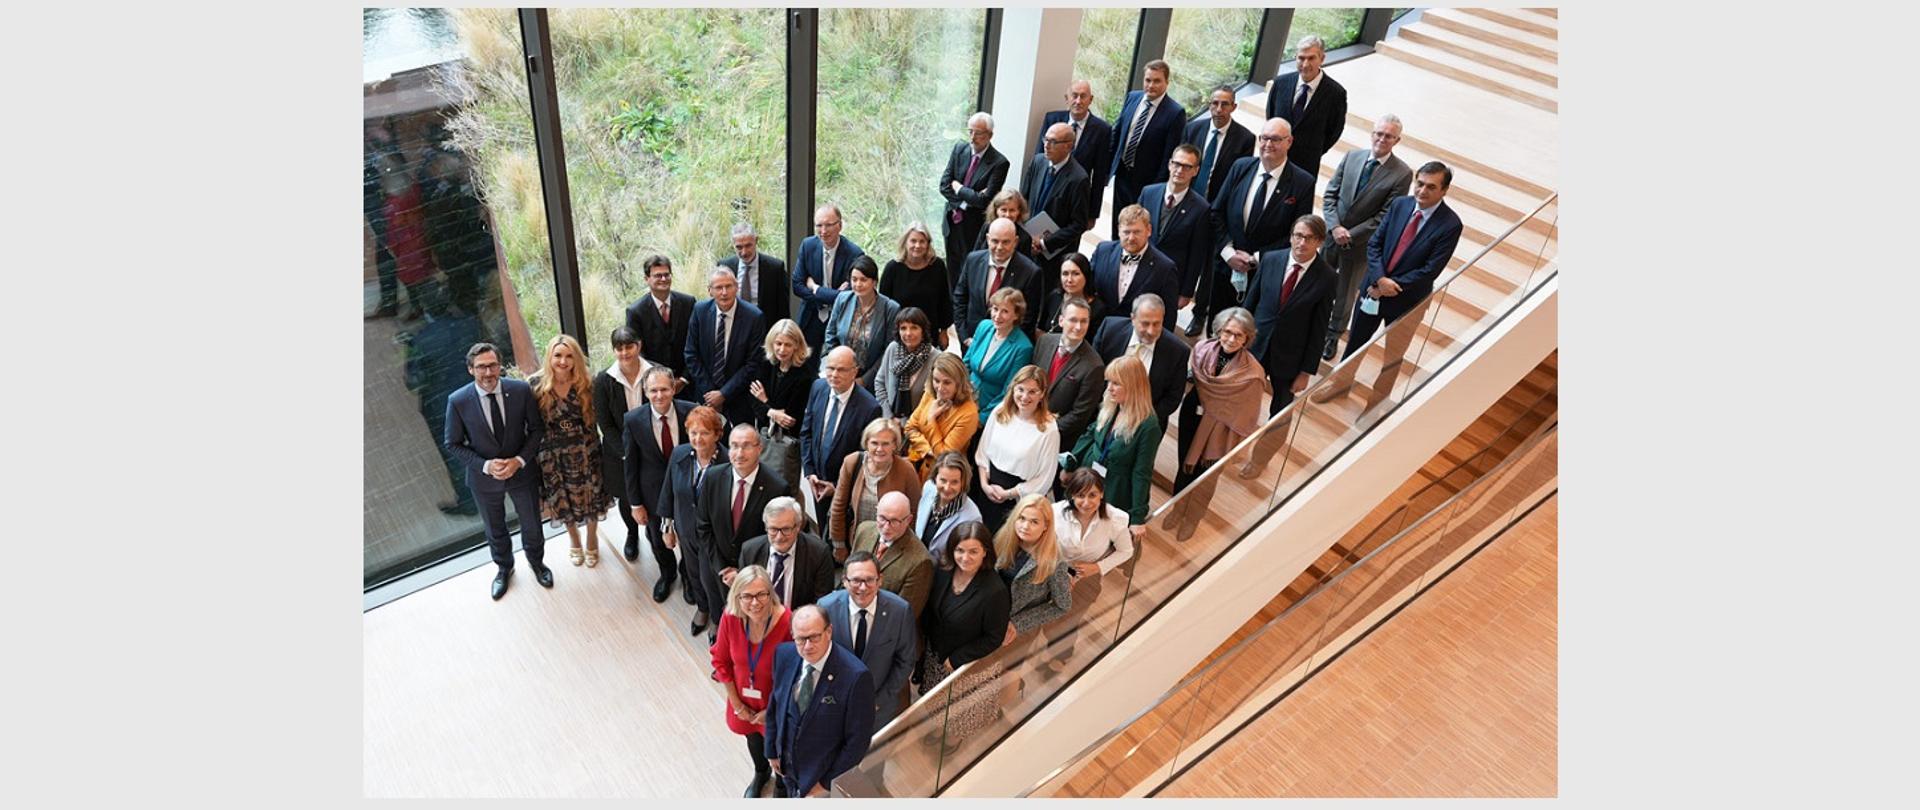 15 Forum Konsultacyjne Prokuratorów Generalnych Unii Europejskiej - zdjęcie grupowe